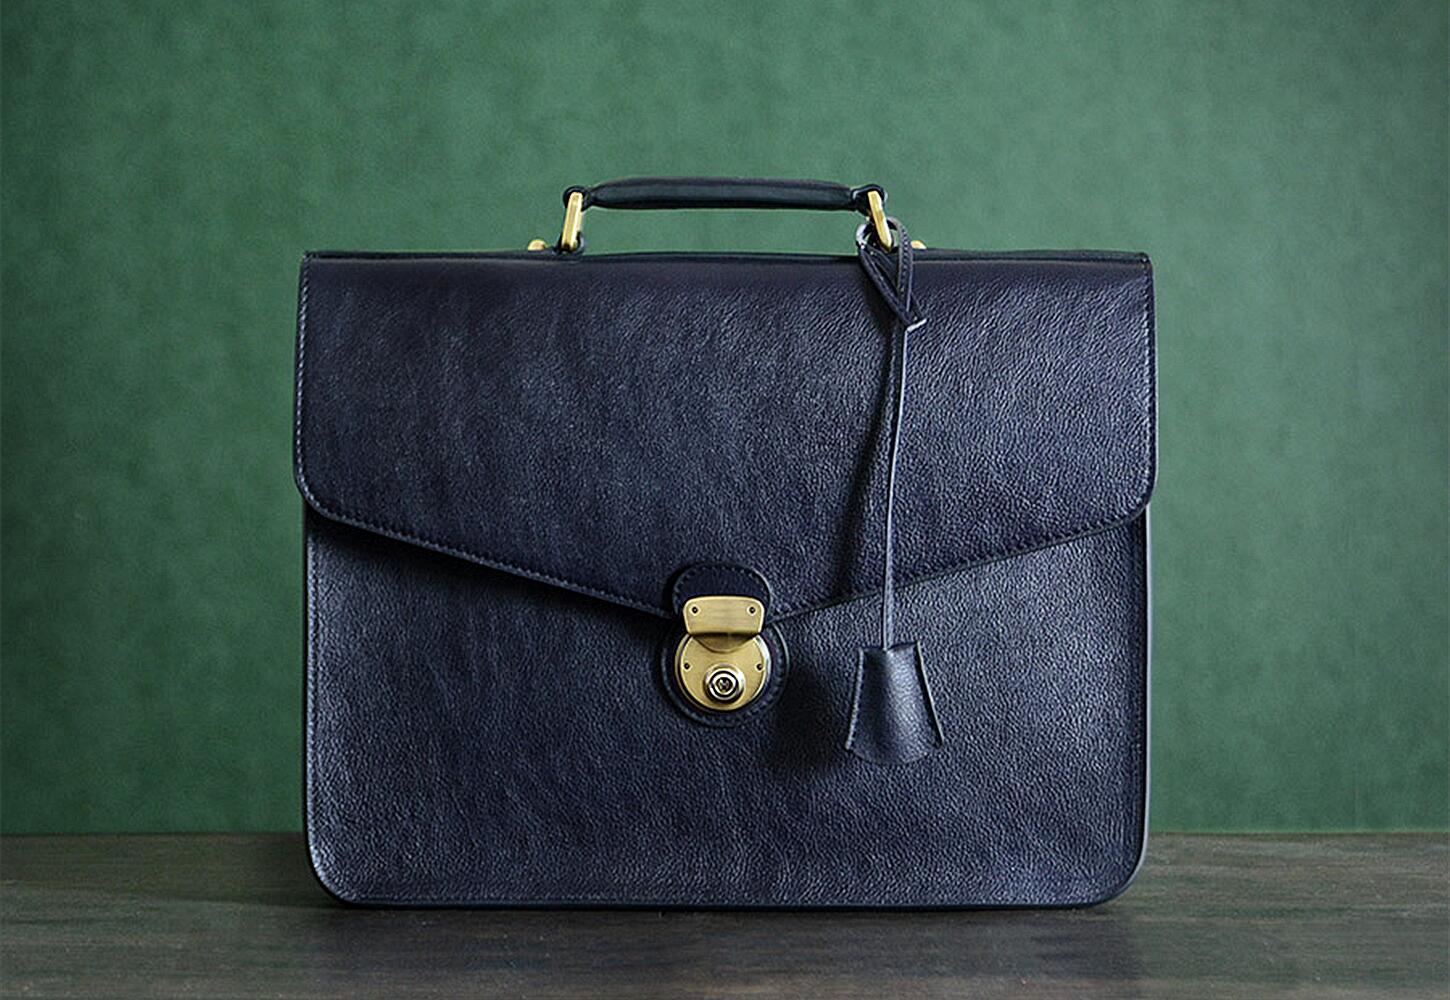 Help me choose :) : r/handbags